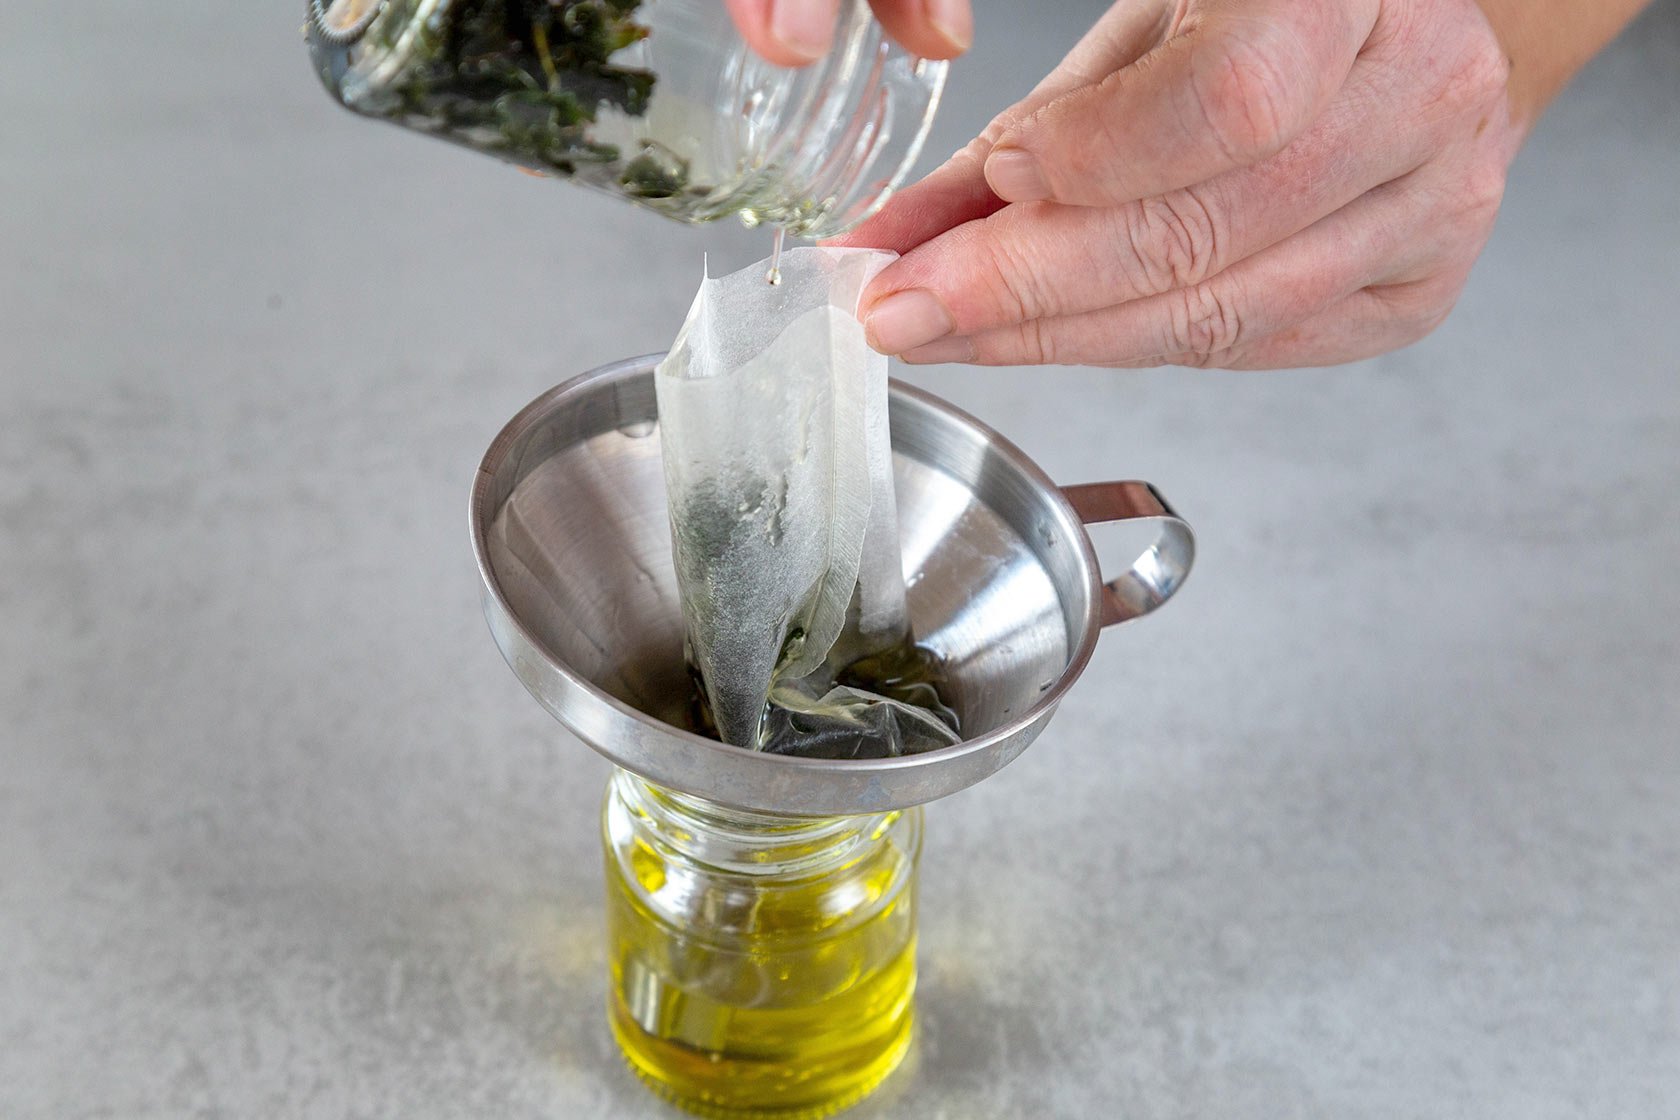 Du kannst sehr leicht Pfefferminzöl selber machen und als milde Alternative zu ätherischem Öl für viele gesunde Anwendungen einsetzen.